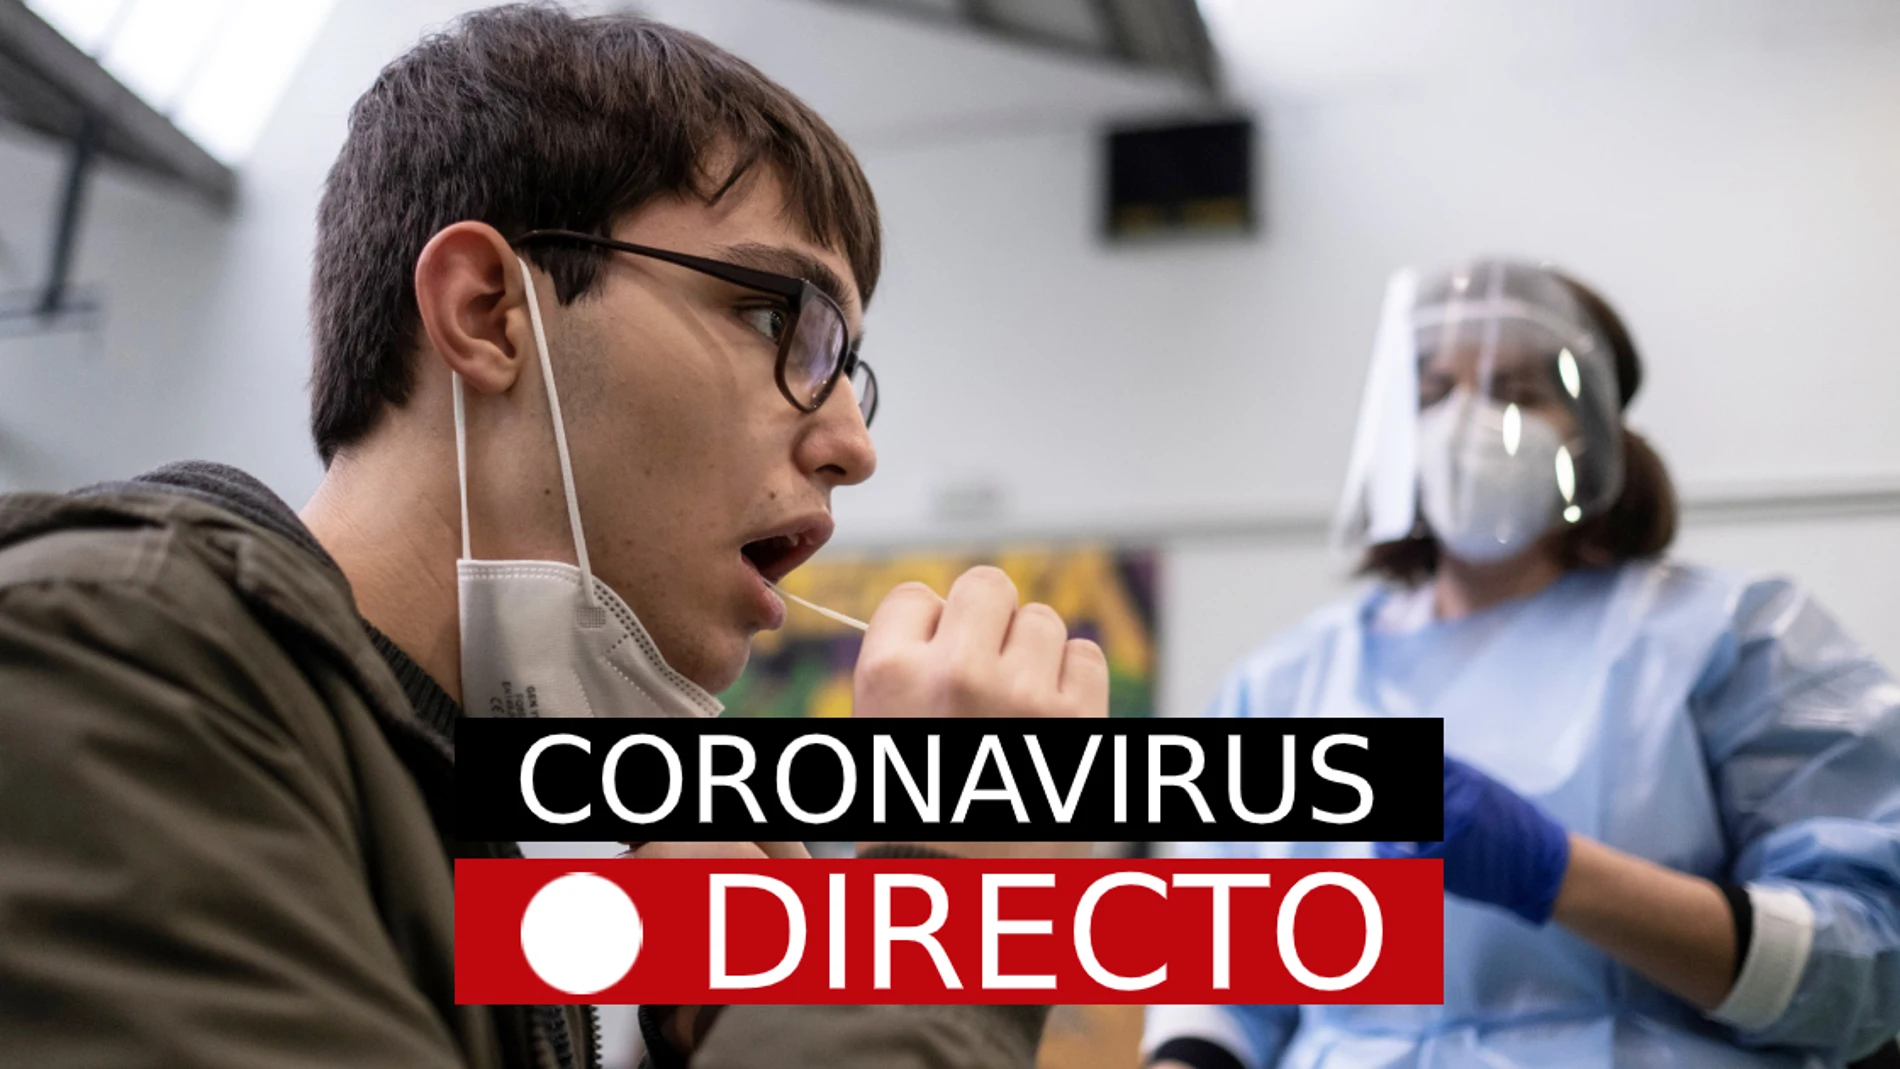 Coronavirus en España y el mundo, hoy: Noticias de última hora​, en directo